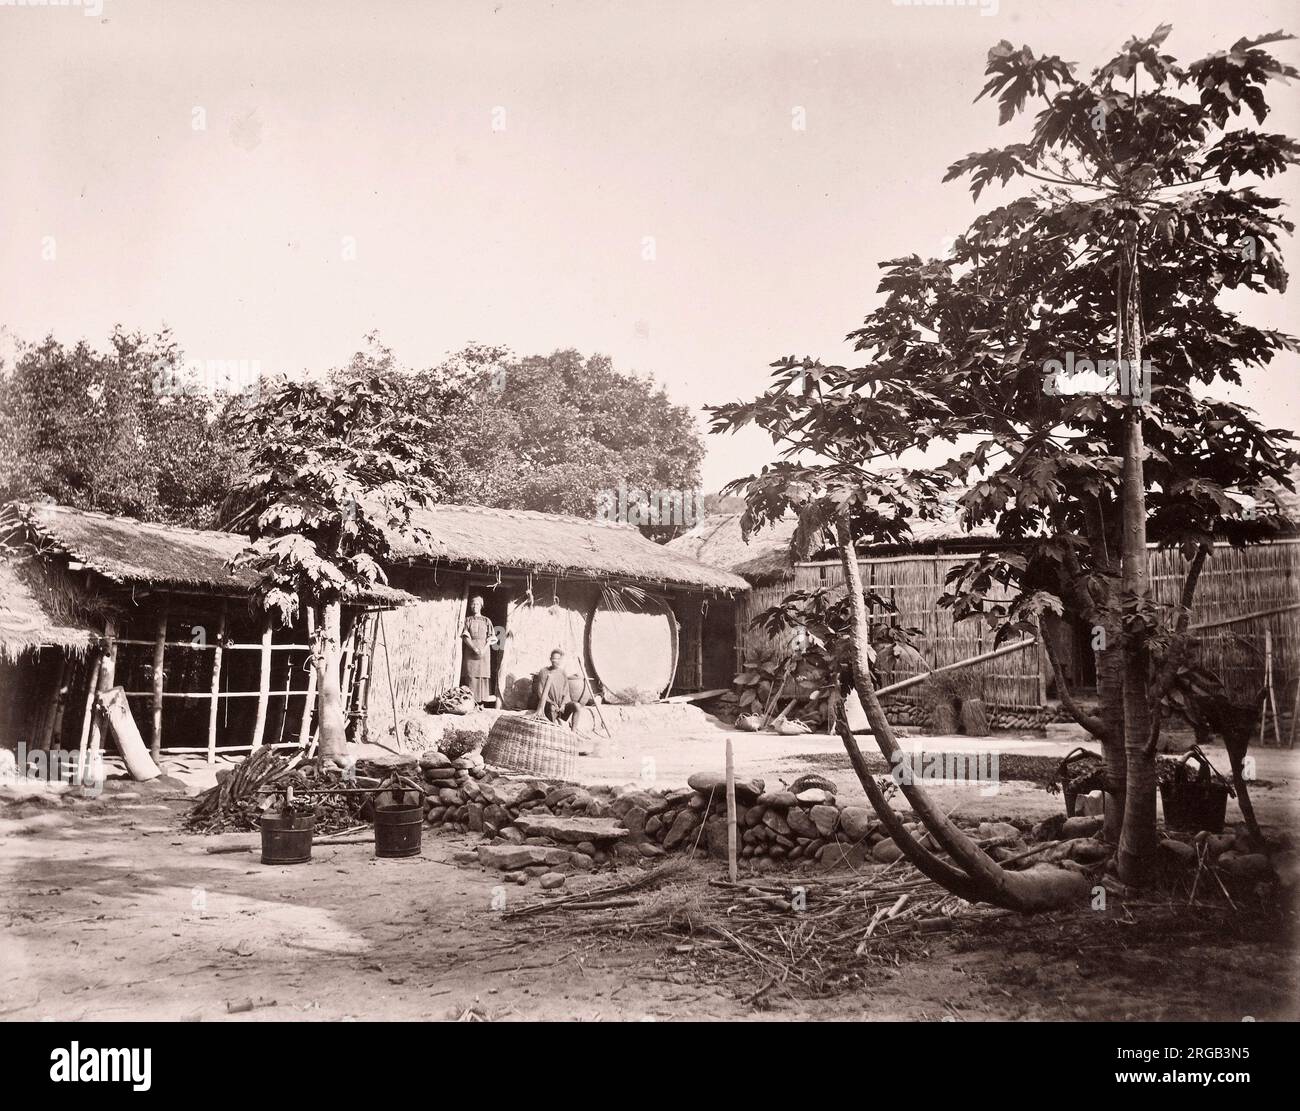 John Thomson (14 juin 1837 - 29 septembre 1921) photographe écossais, actif en Chine vers 1870, d'un album de ses images: Maisons chinoises, probablement formosa, Taïwan. Banque D'Images